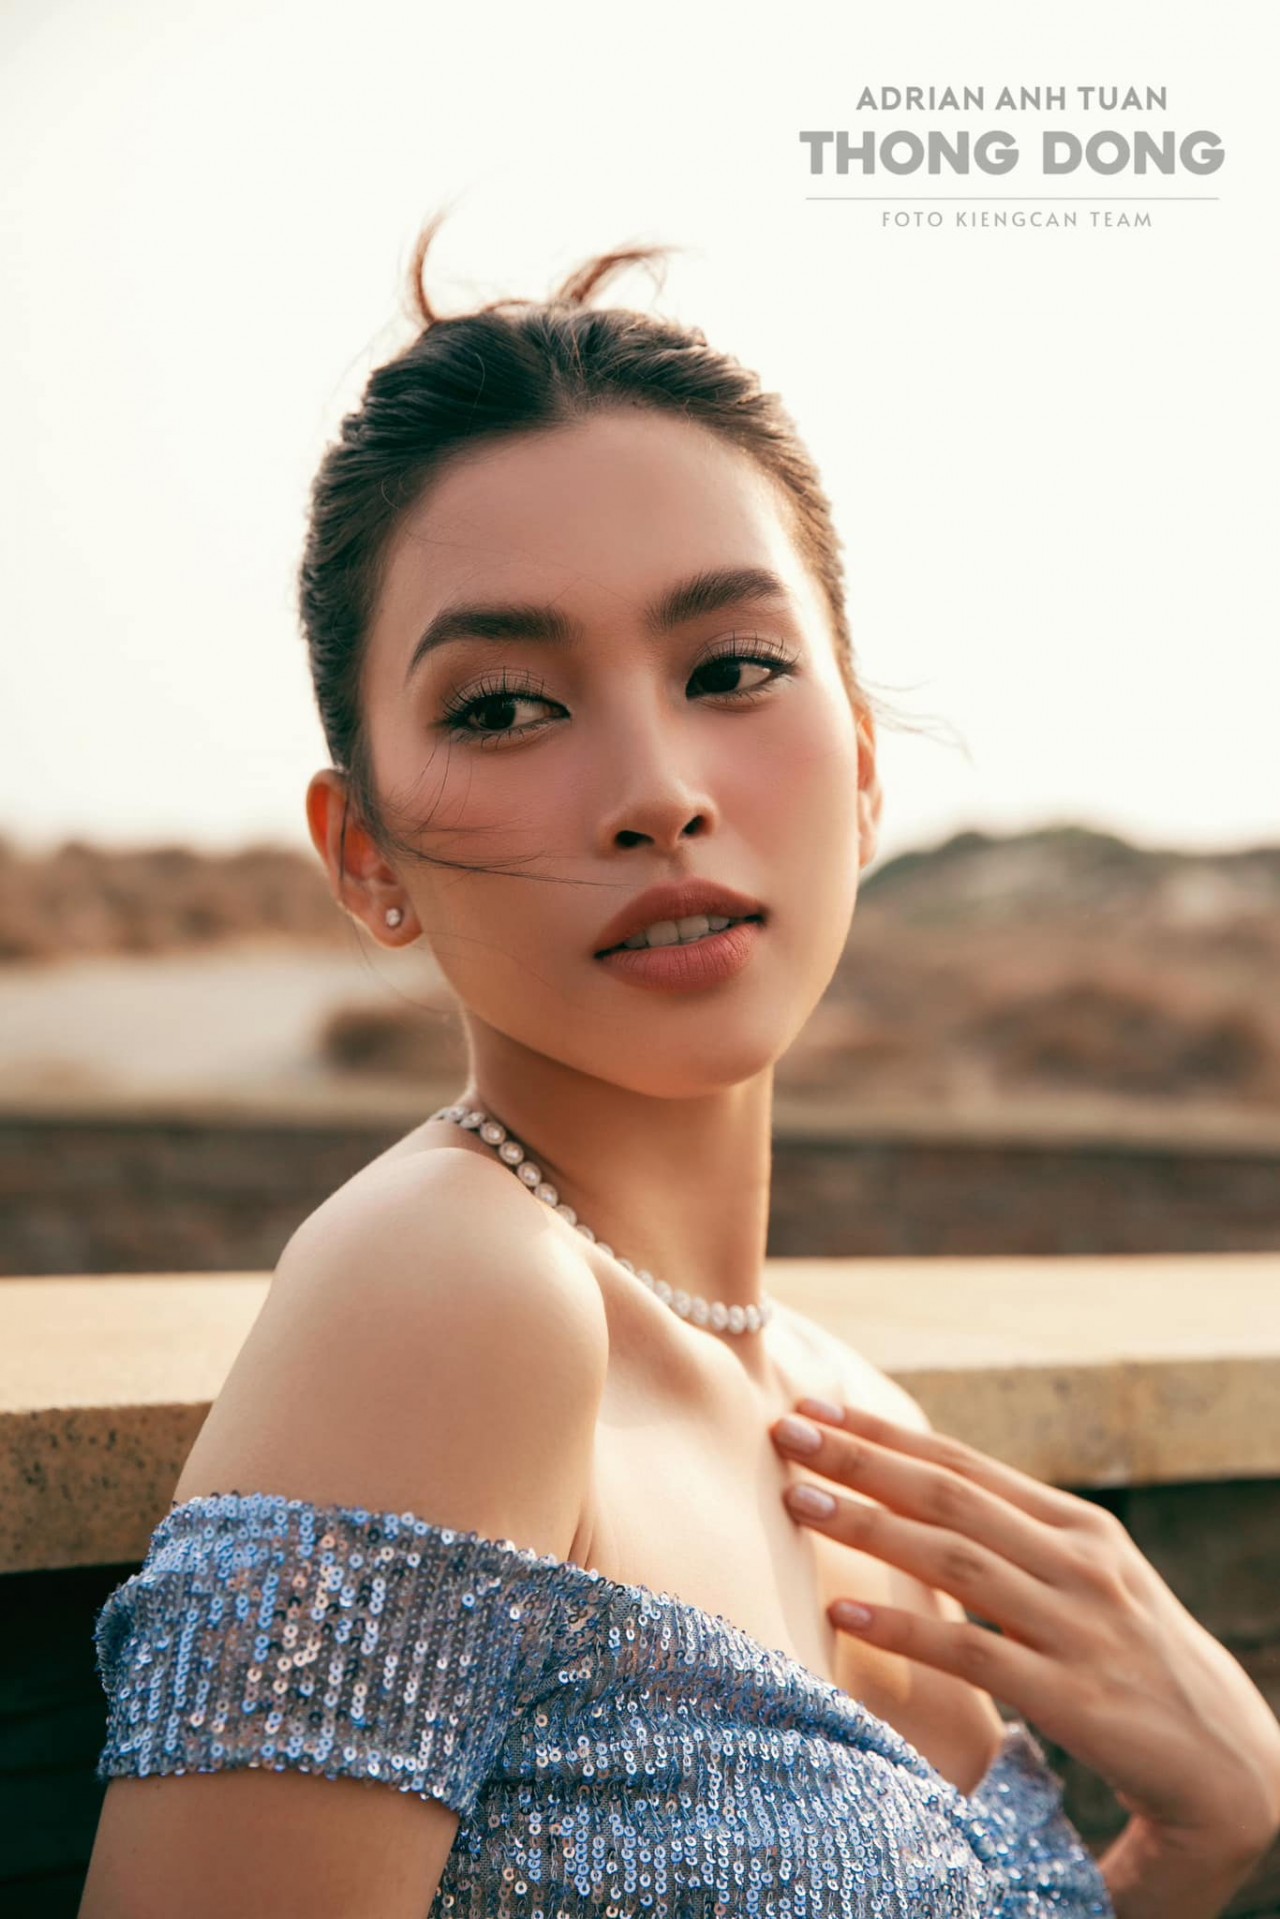 Hoa hậu Tiểu Vy và thời trang gợi cảm